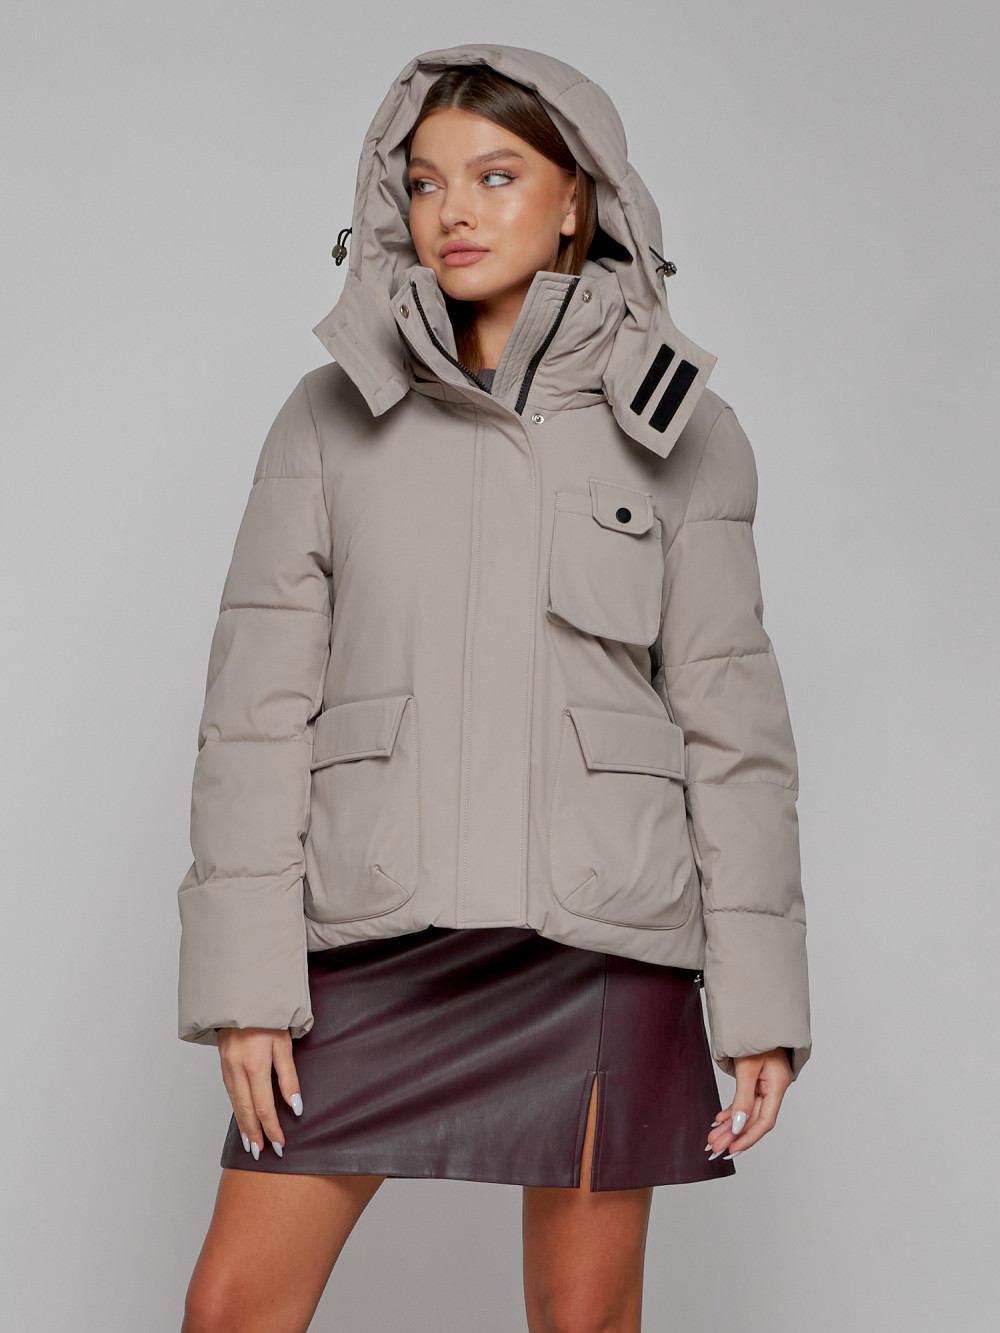 Купить куртку зимнюю оптом от производителя недорого в Москве 52413SK 1